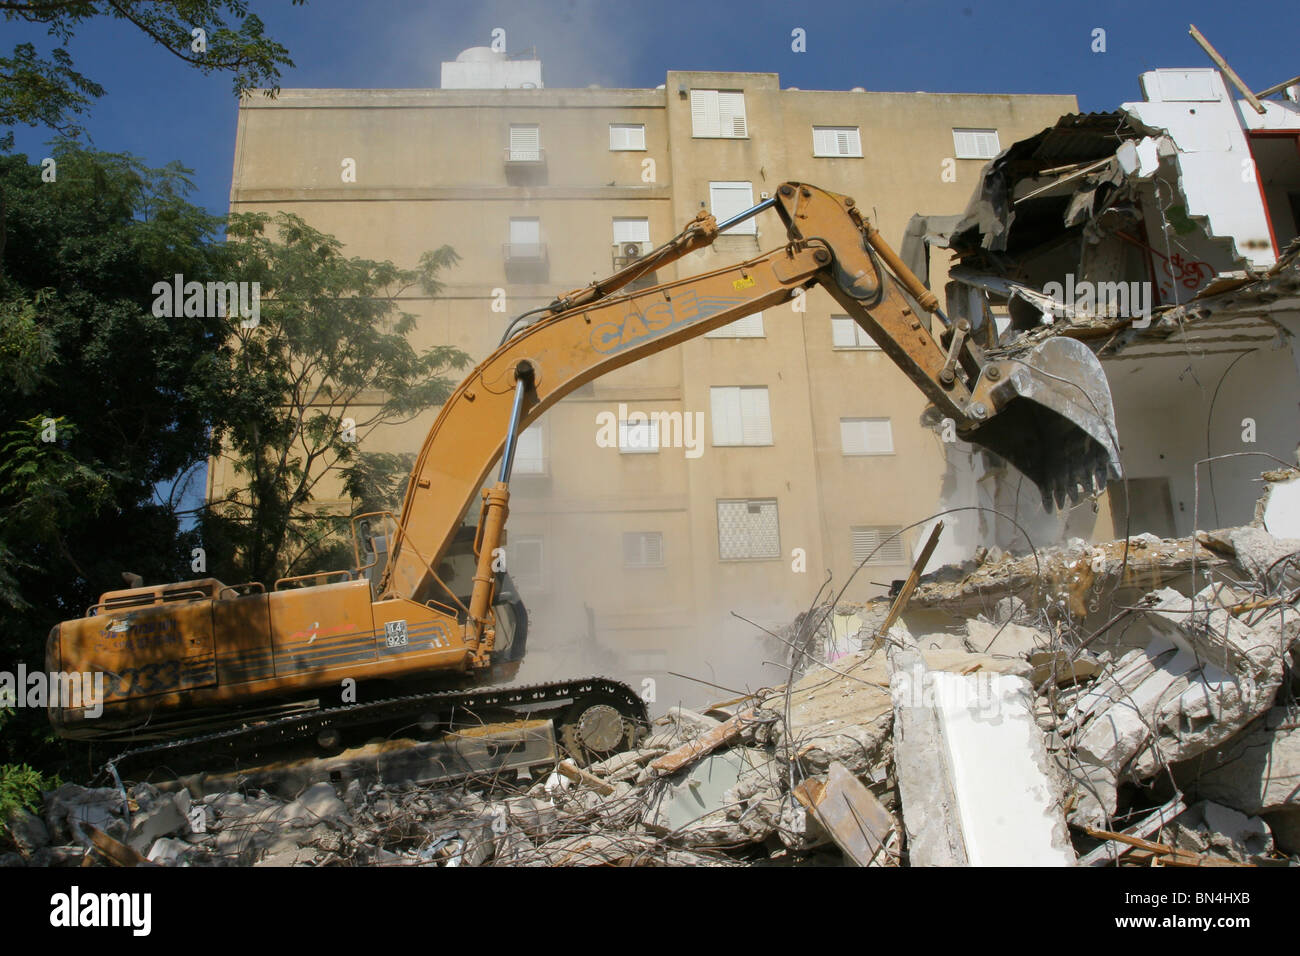 Israël, Natanya, la démolition d'un bâtiment ancien pour faire place à un nouveau bâtiment moderne élevé. Banque D'Images